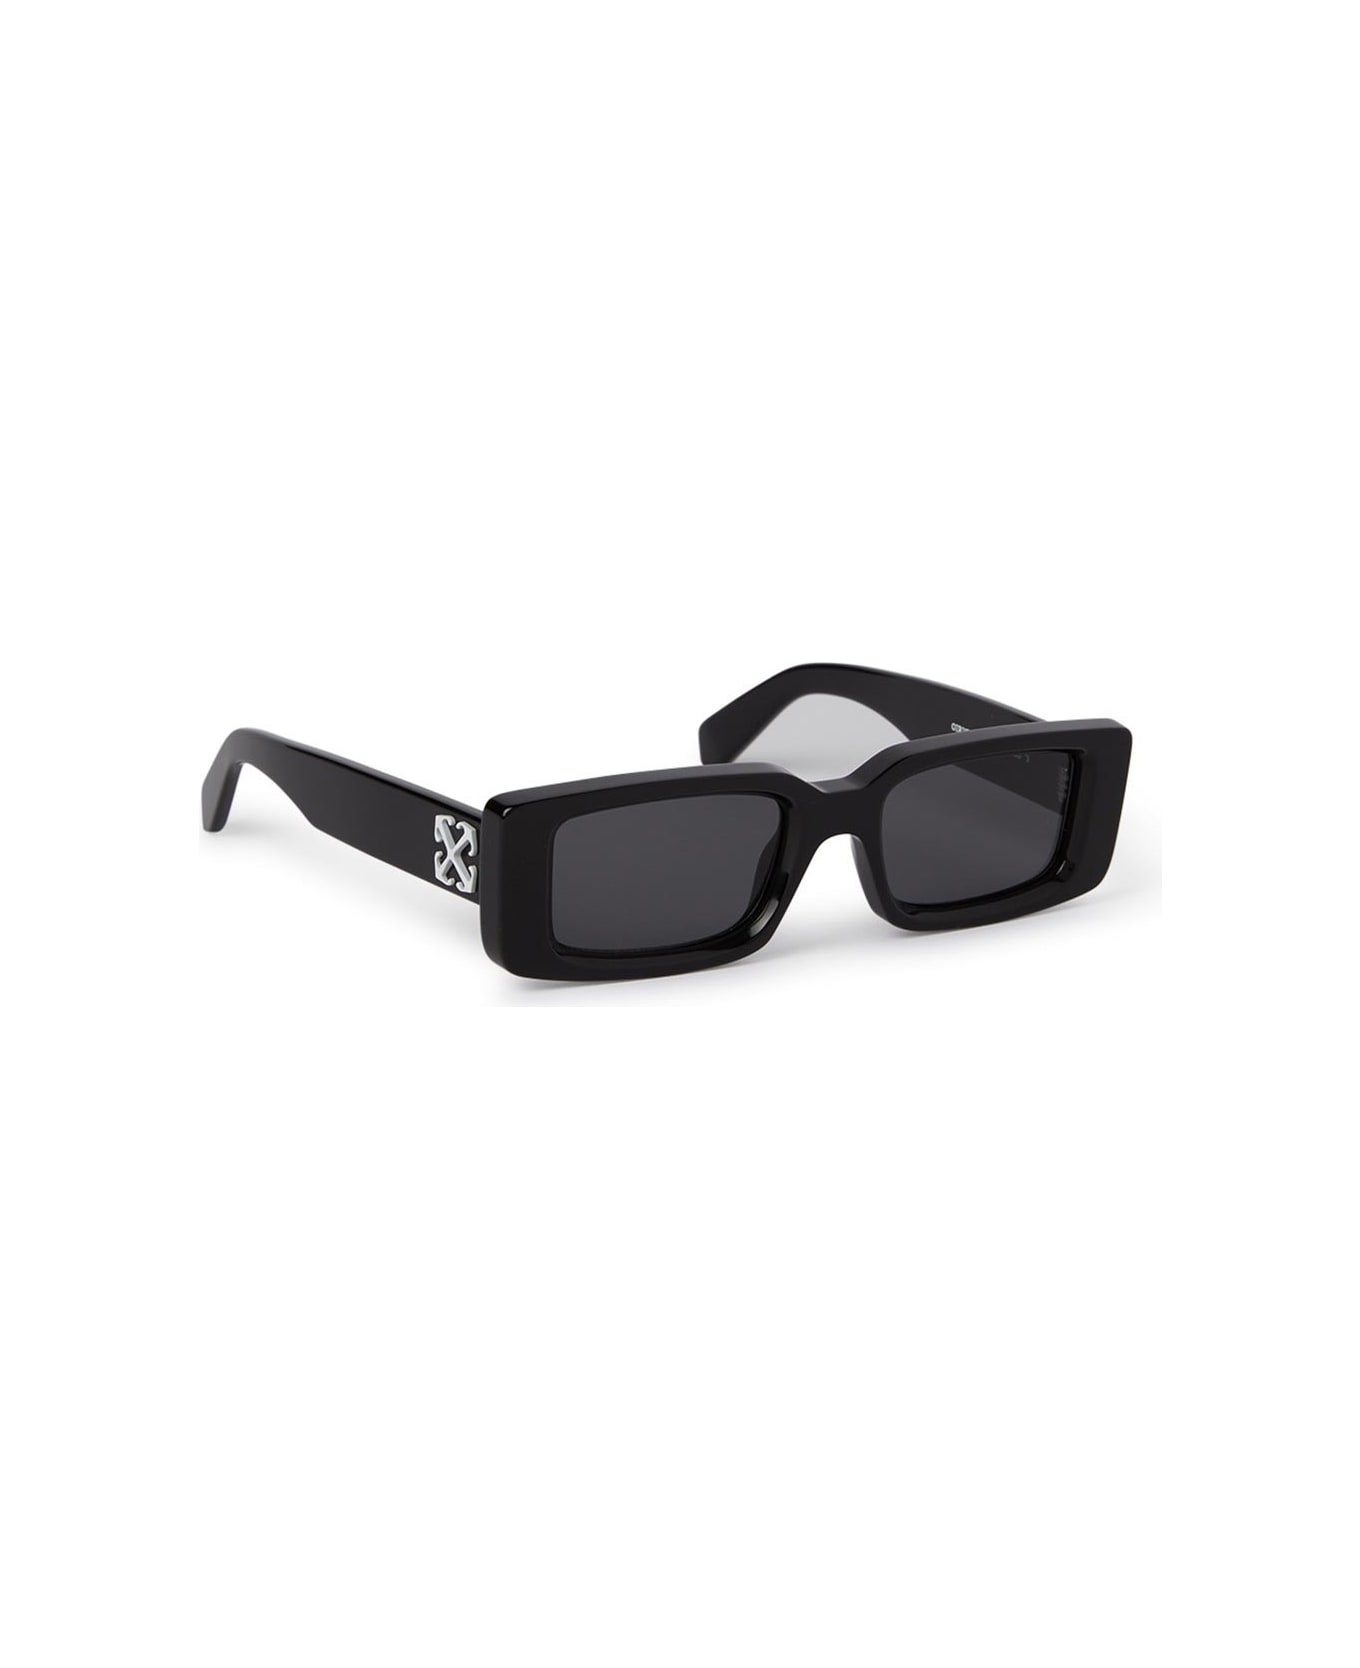 Off-White Sunglasses - Nero/Nero